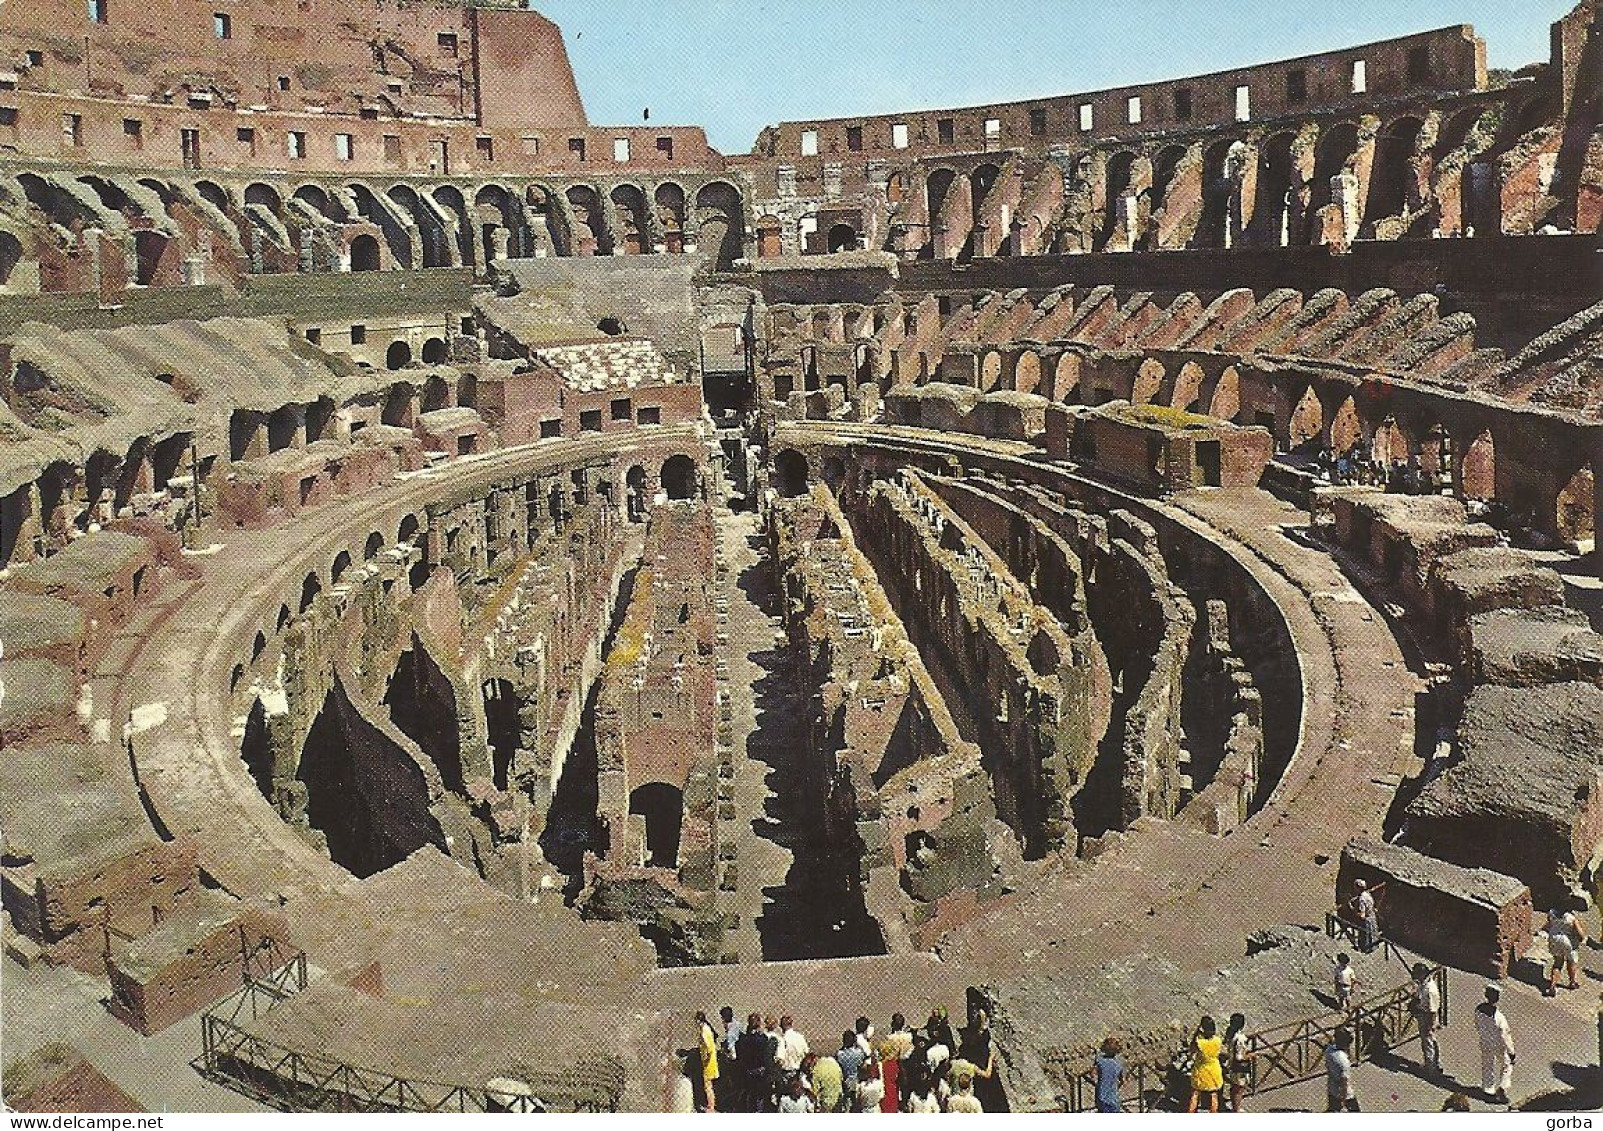 *CPM - ITALIE - LATIUM - ROME - Intérieur Du Colisé - Colosseum